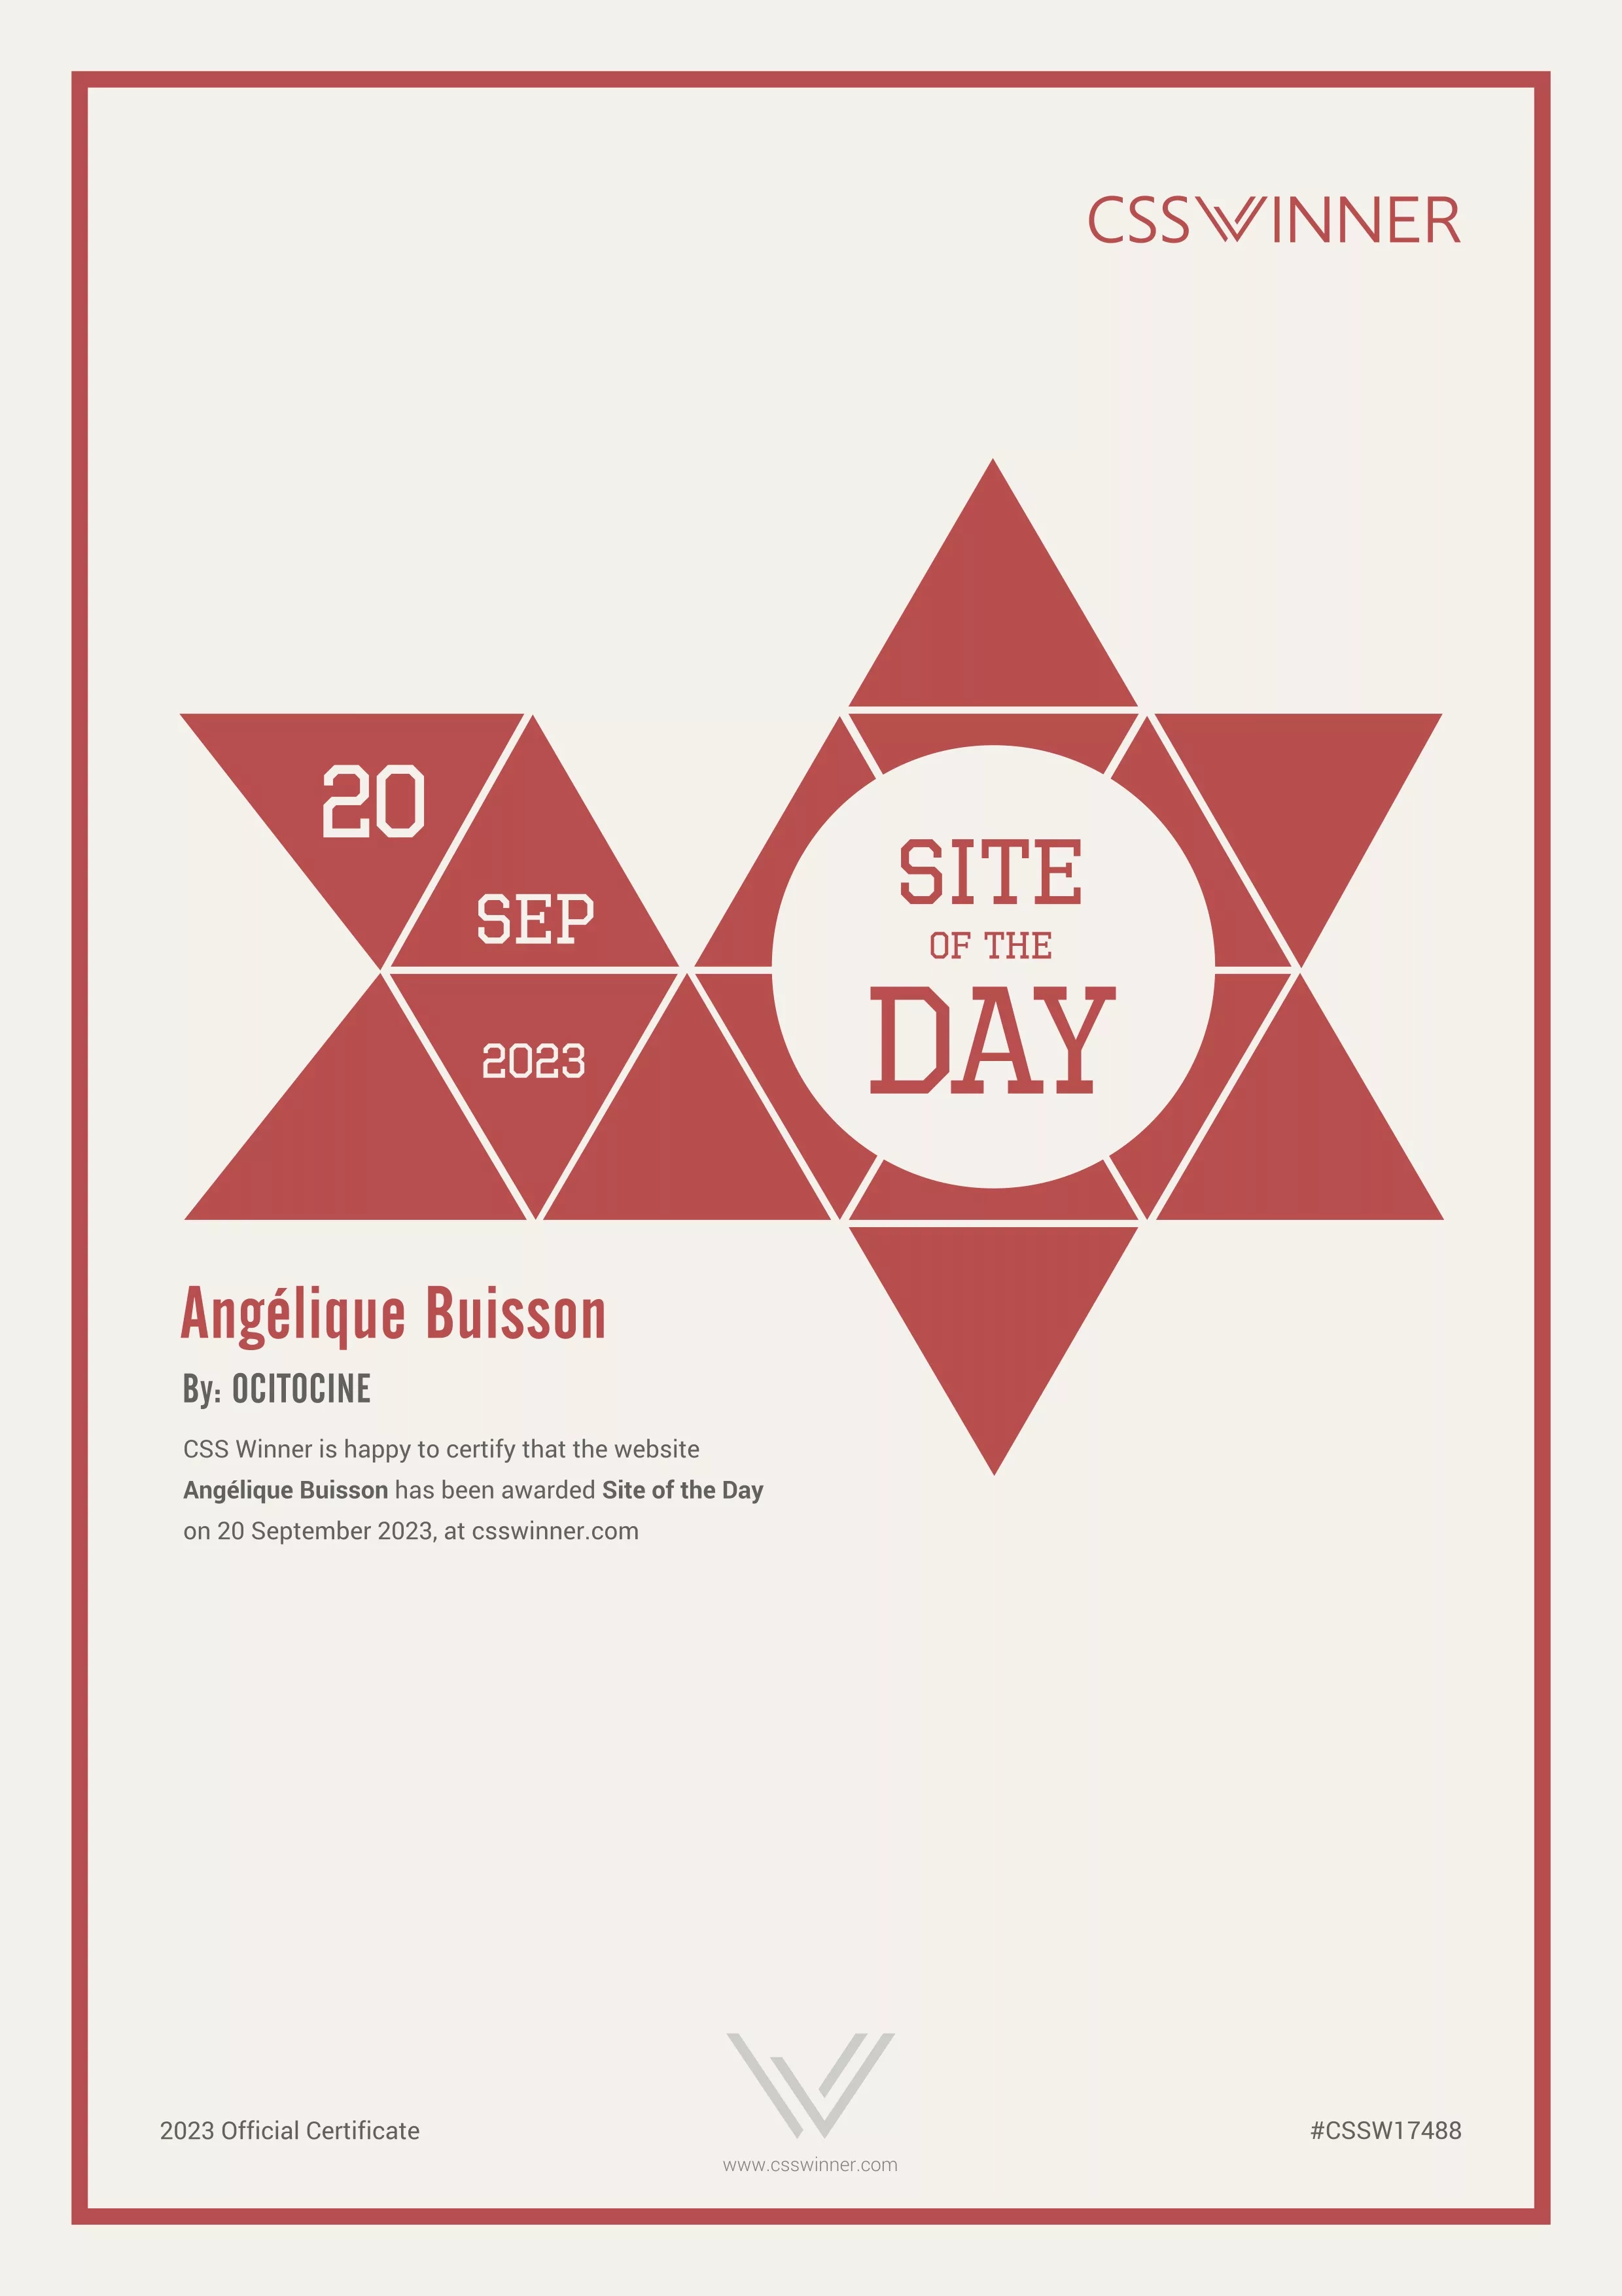 Ocitocine, agence créative web et branding, a remporté un prix "CSSWinner Site of the Day" pour la réalisation du site web angelique-buisson.com